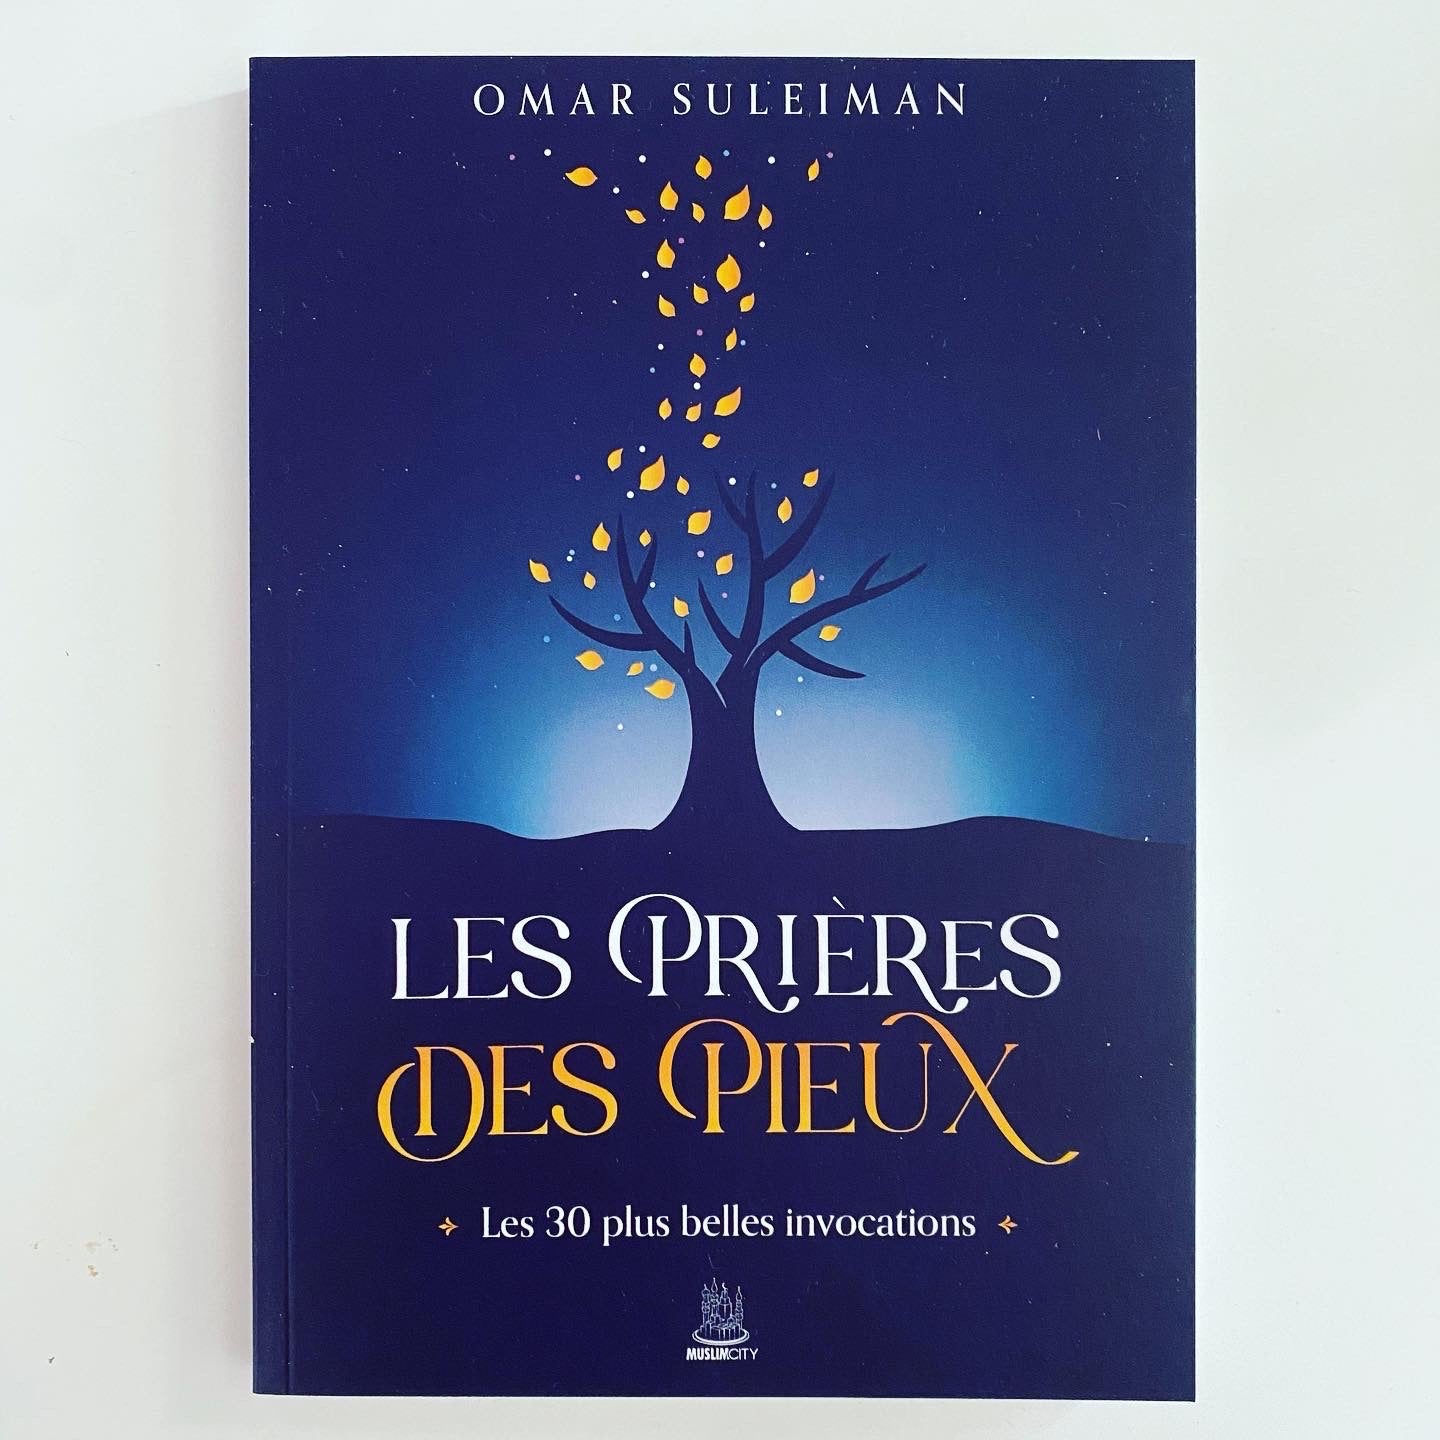 Les prières des pieux | Les 30 plus belles invocations d'Omar Suleiman - Editions MuslimCity